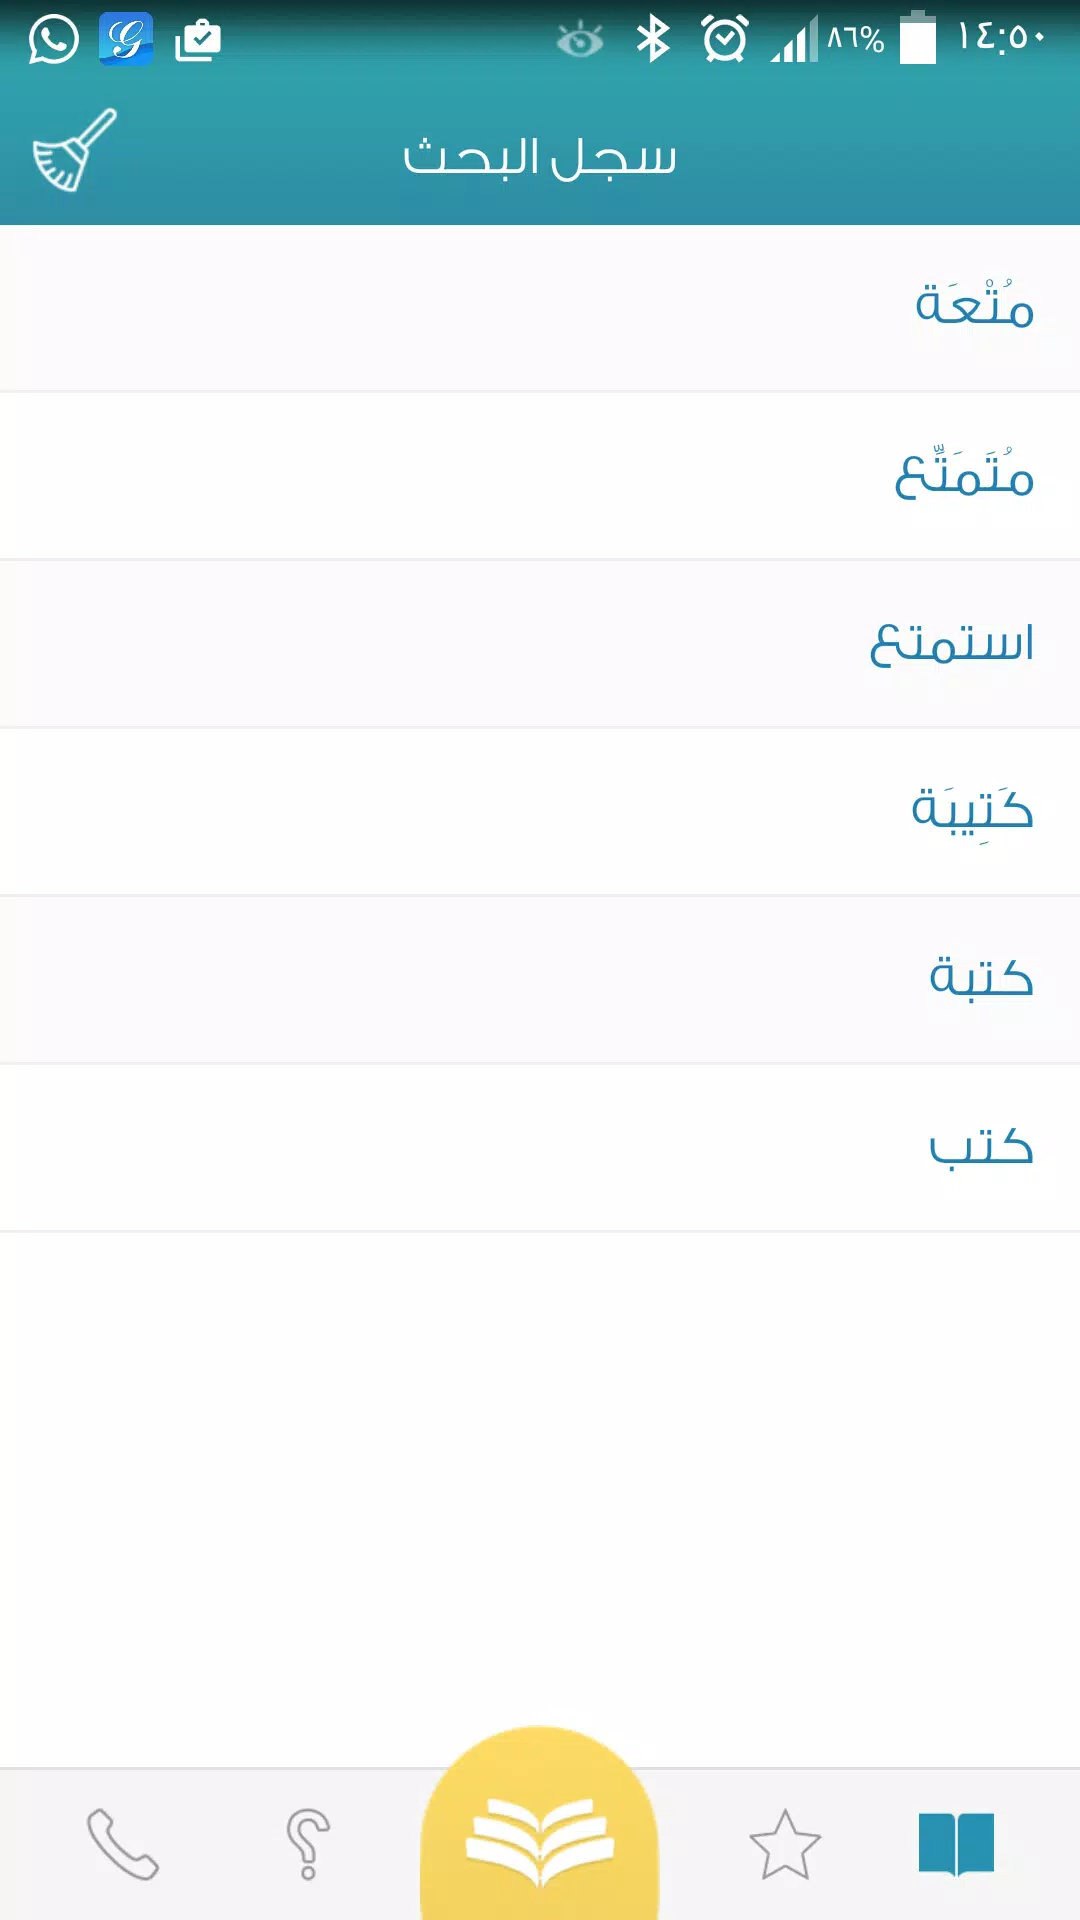 اللوتس حبل مدفع  معجم المعاني قاموس عربي عربي for Android - APK Download